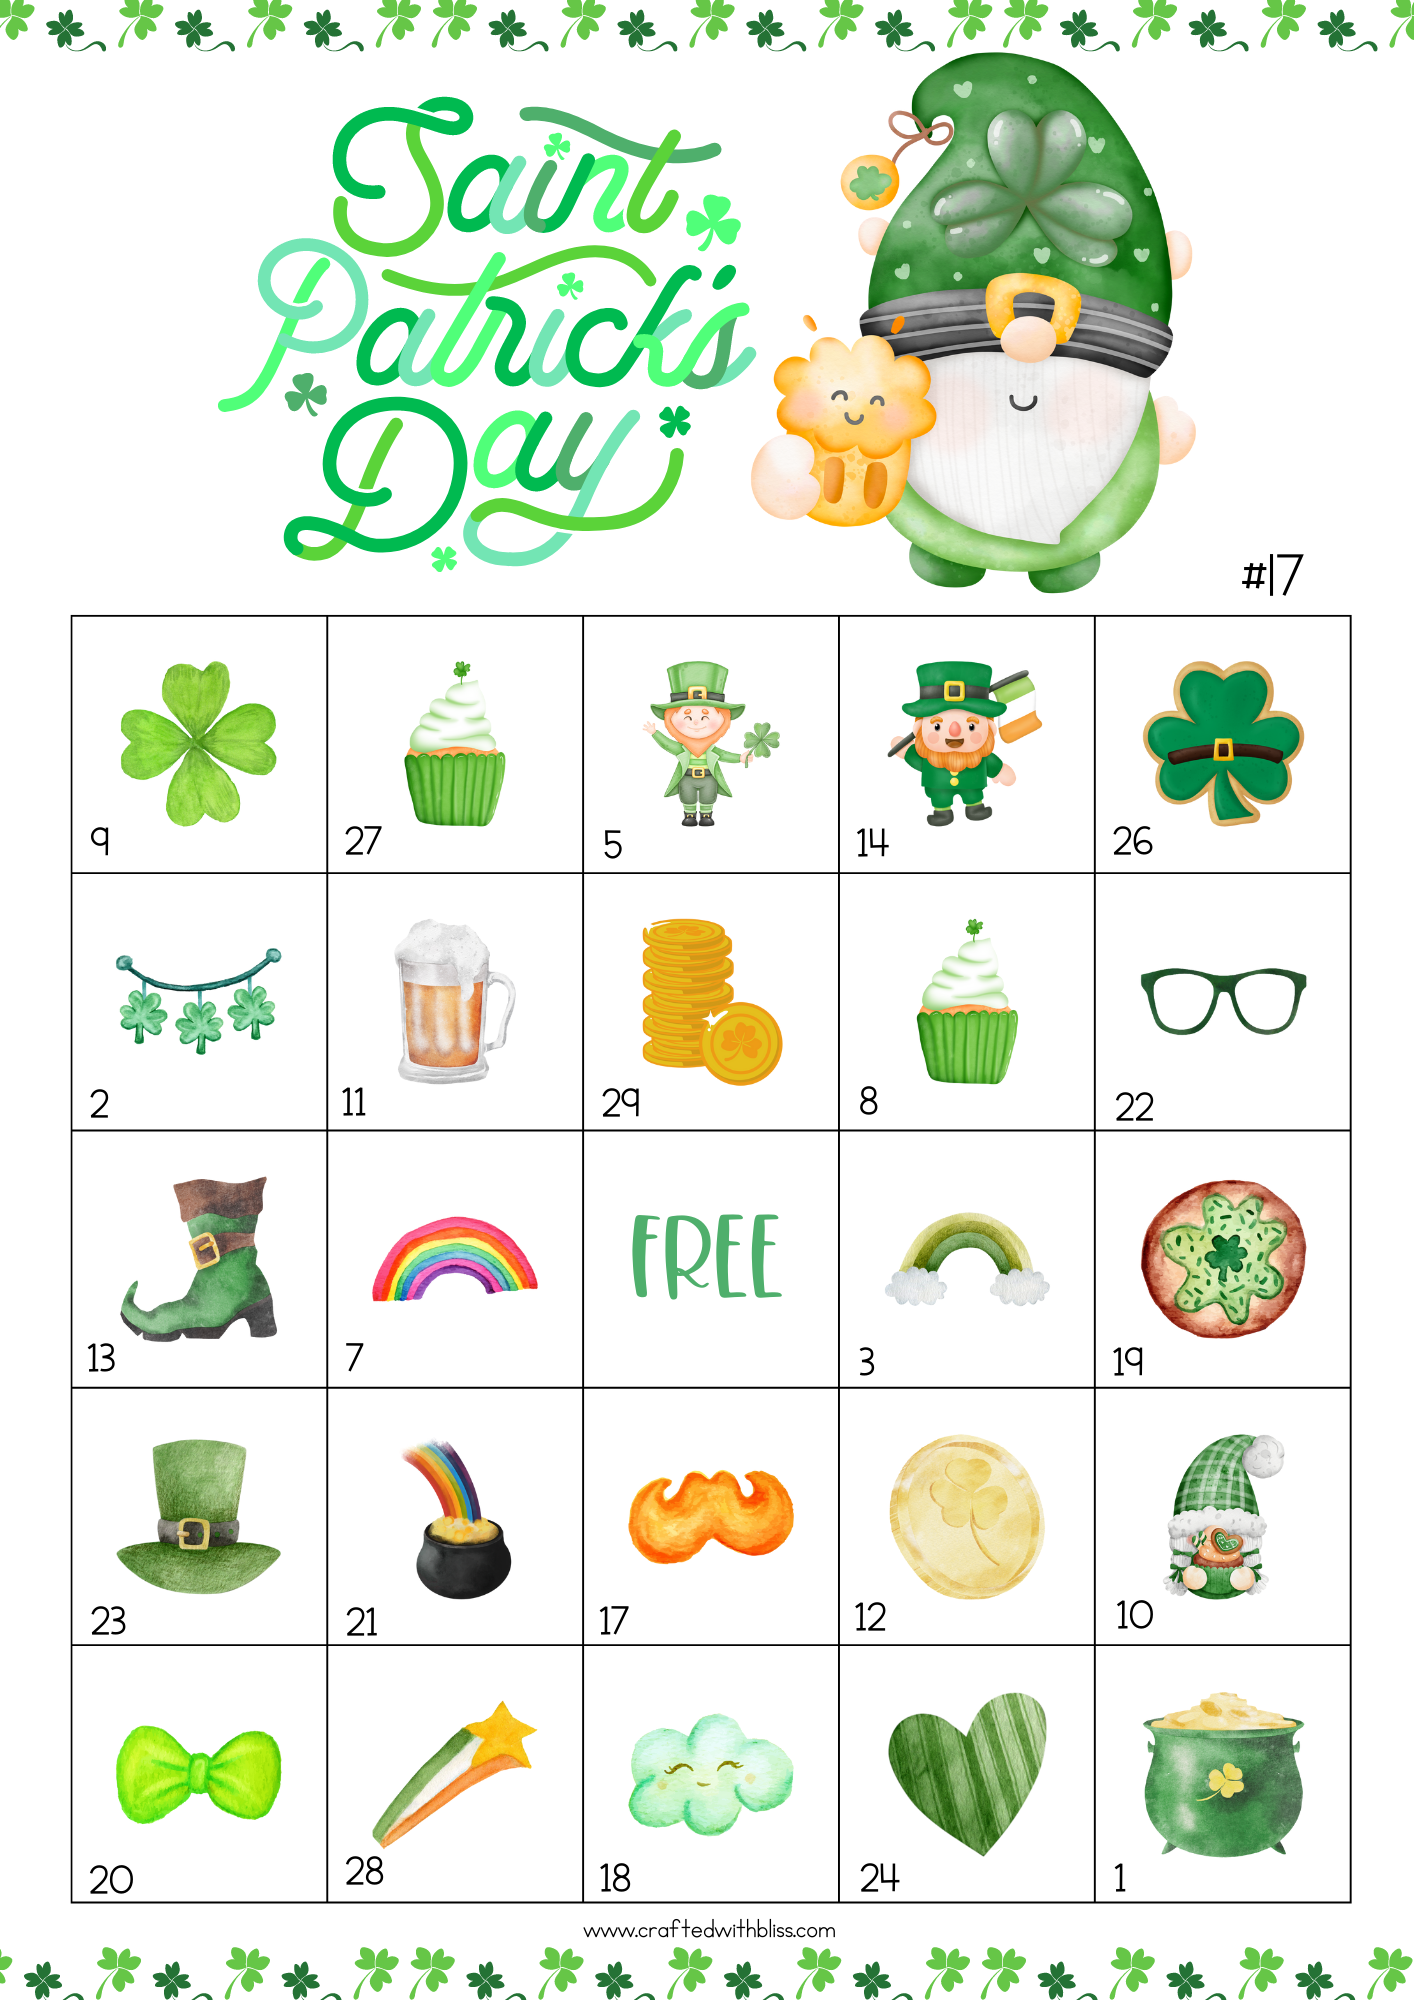 50 St. Patrick's Day Bingo Cards (5x5)